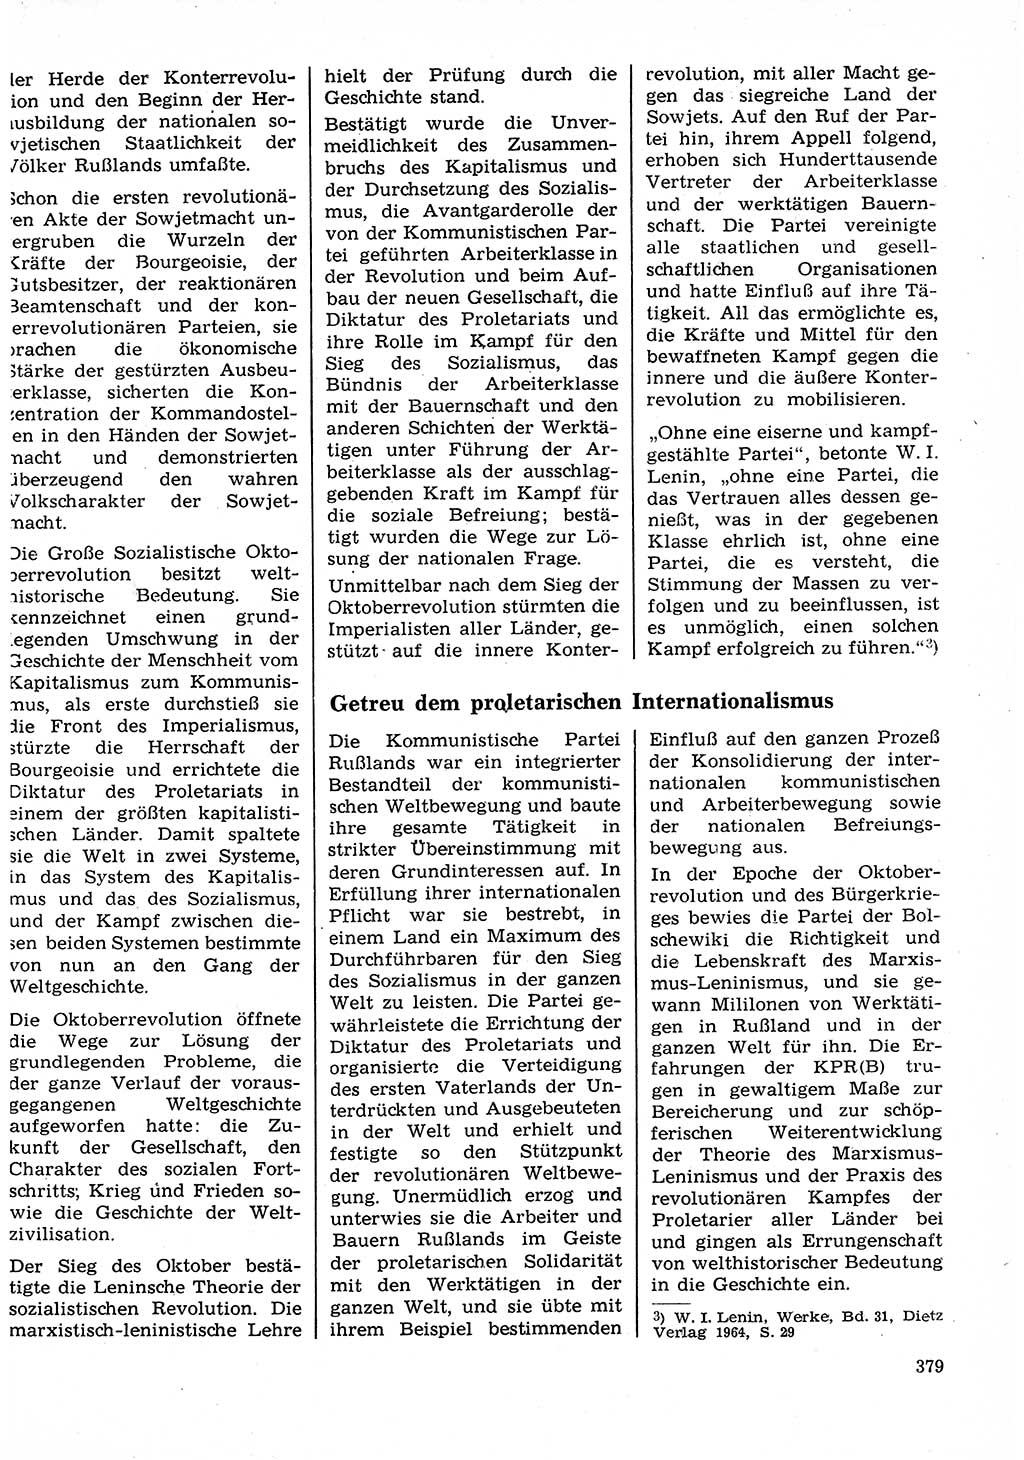 Neuer Weg (NW), Organ des Zentralkomitees (ZK) der SED (Sozialistische Einheitspartei Deutschlands) für Fragen des Parteilebens, 27. Jahrgang [Deutsche Demokratische Republik (DDR)] 1972, Seite 379 (NW ZK SED DDR 1972, S. 379)